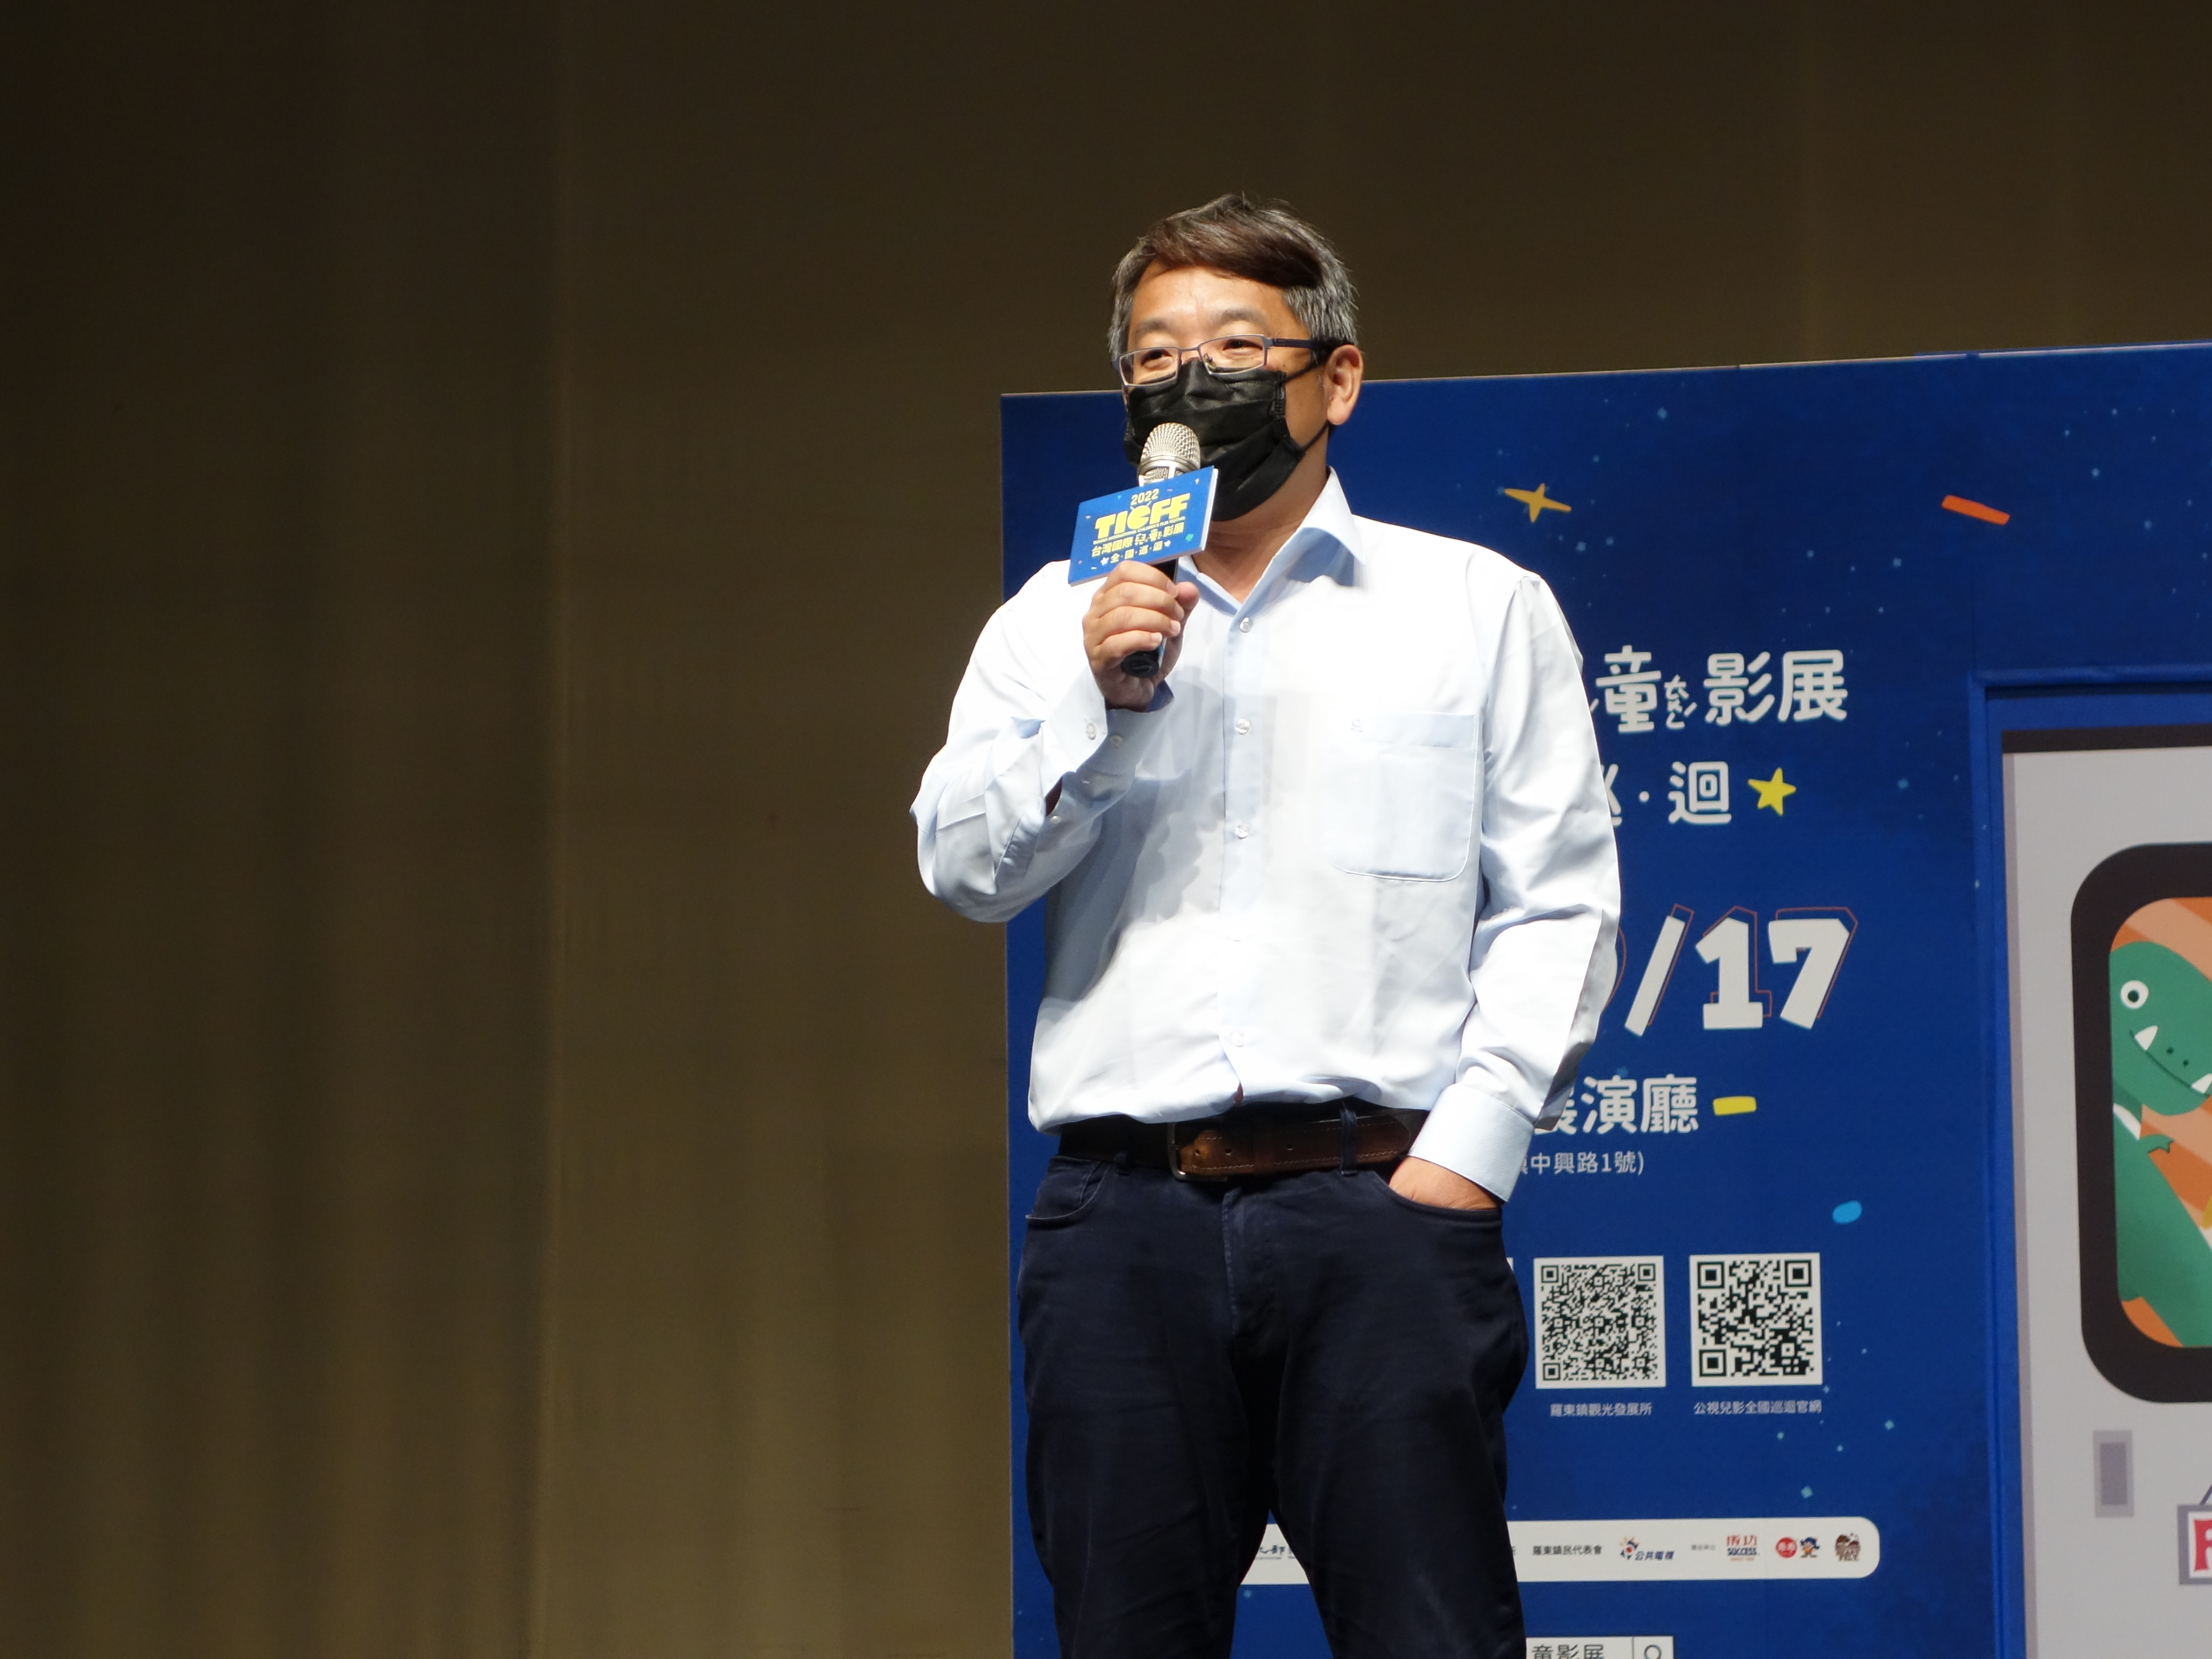 「2022台灣國際兒童影展在羅東」全國首站羅東起跑 優質影片開拓在地視野